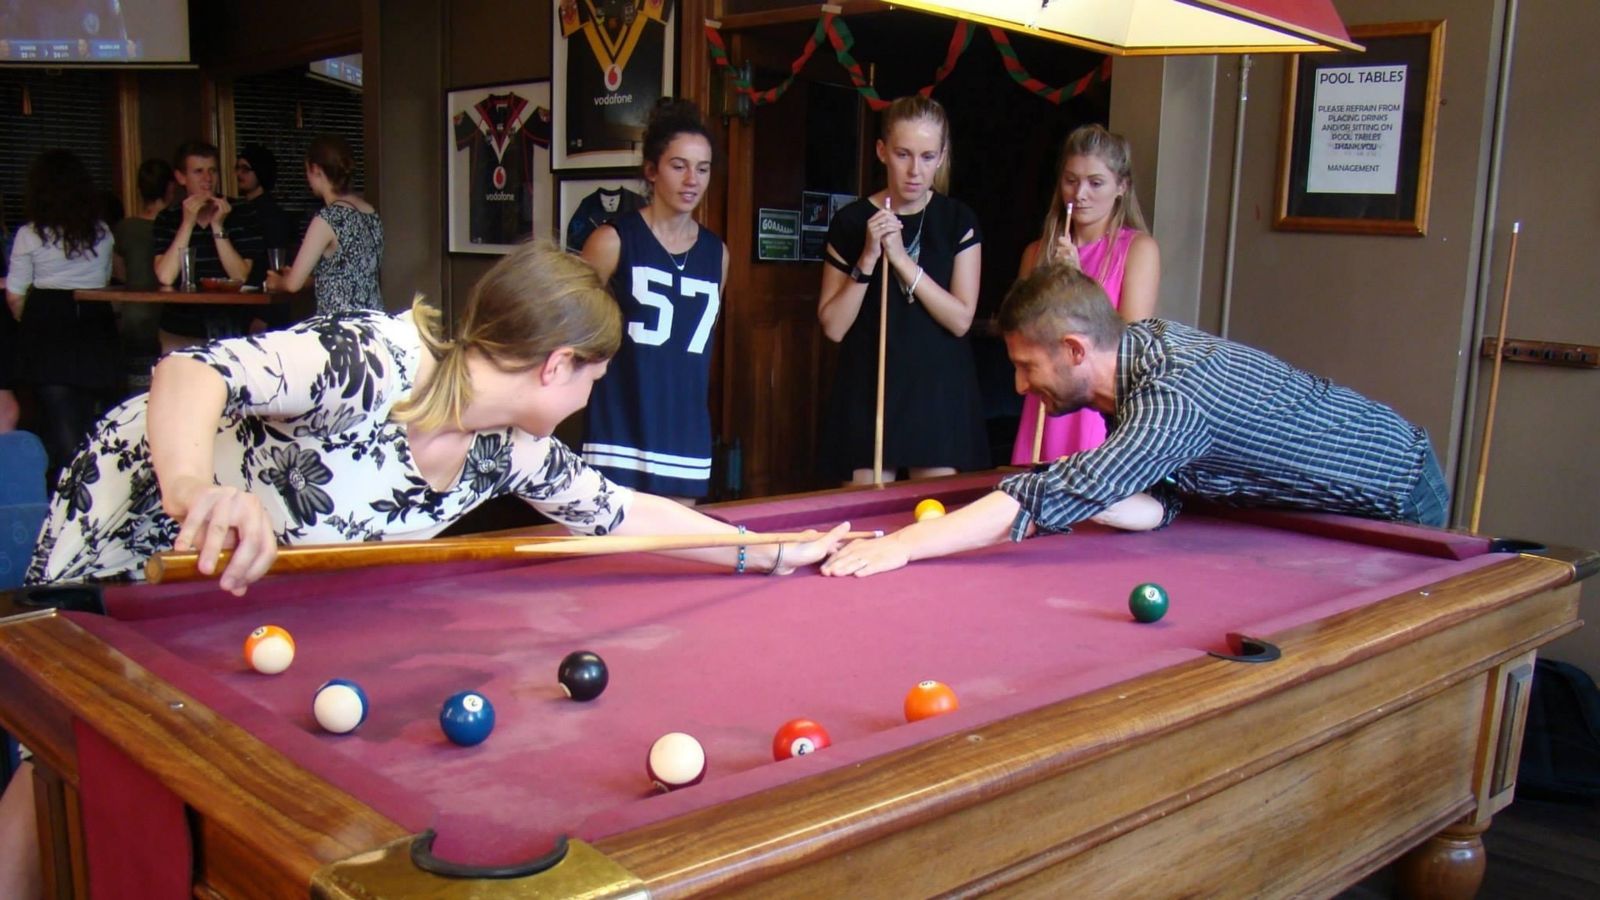 Students playing pool at Italian bar.